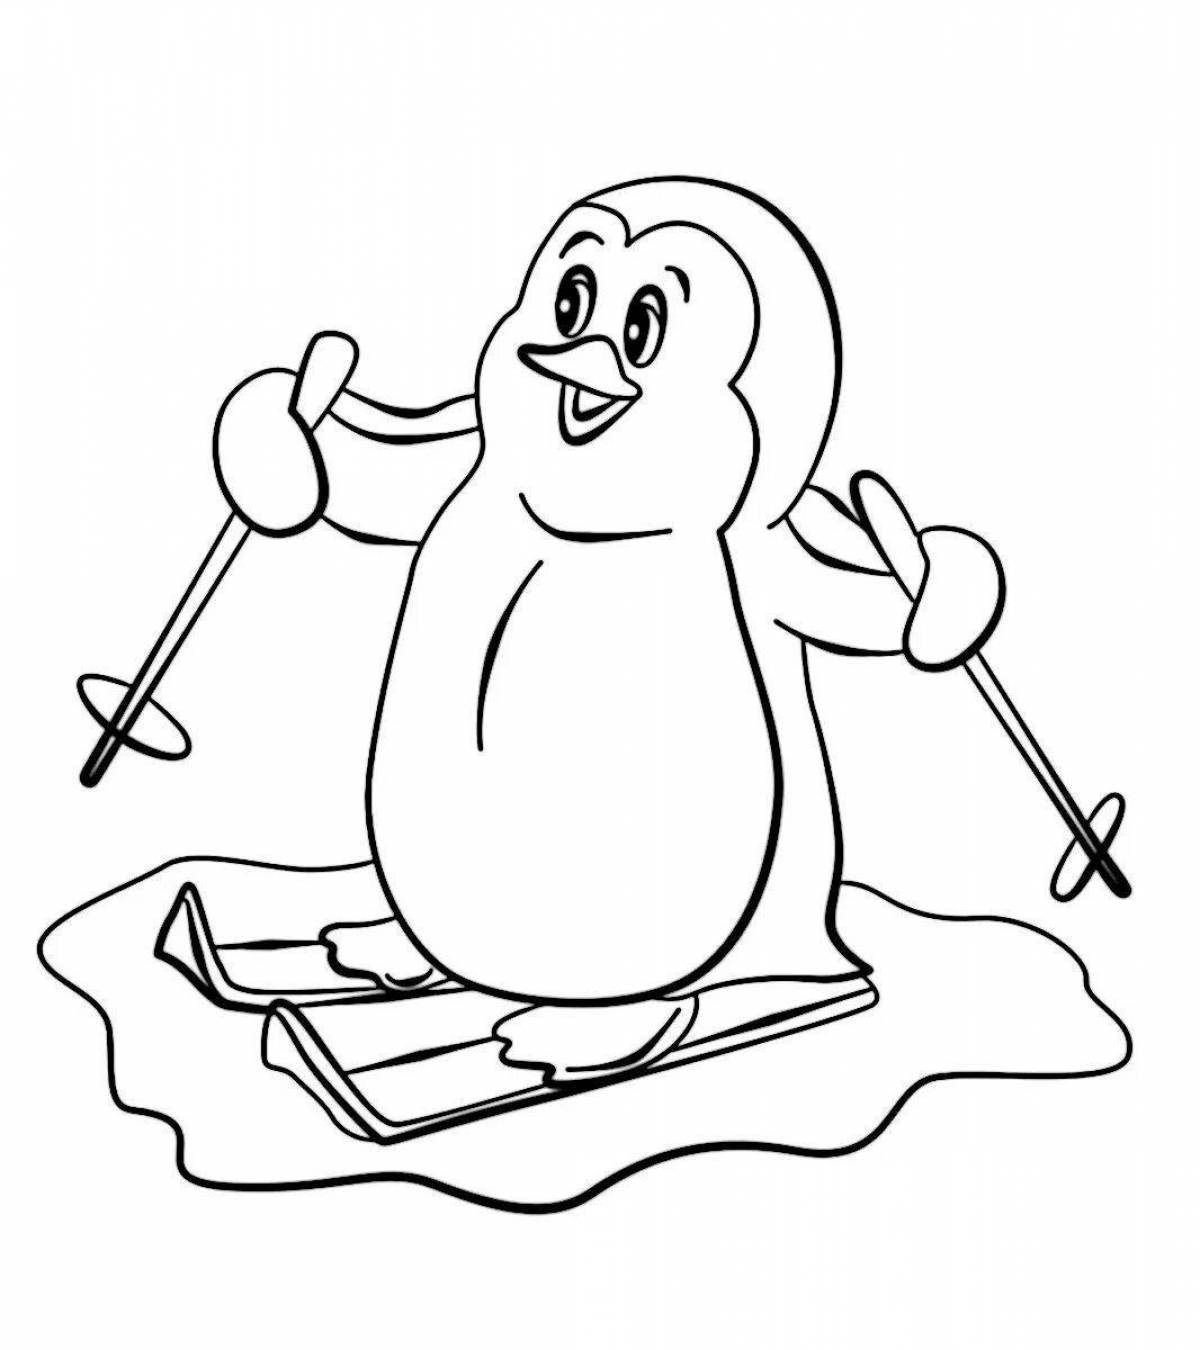 Сказочная раскраска пингвин лоло